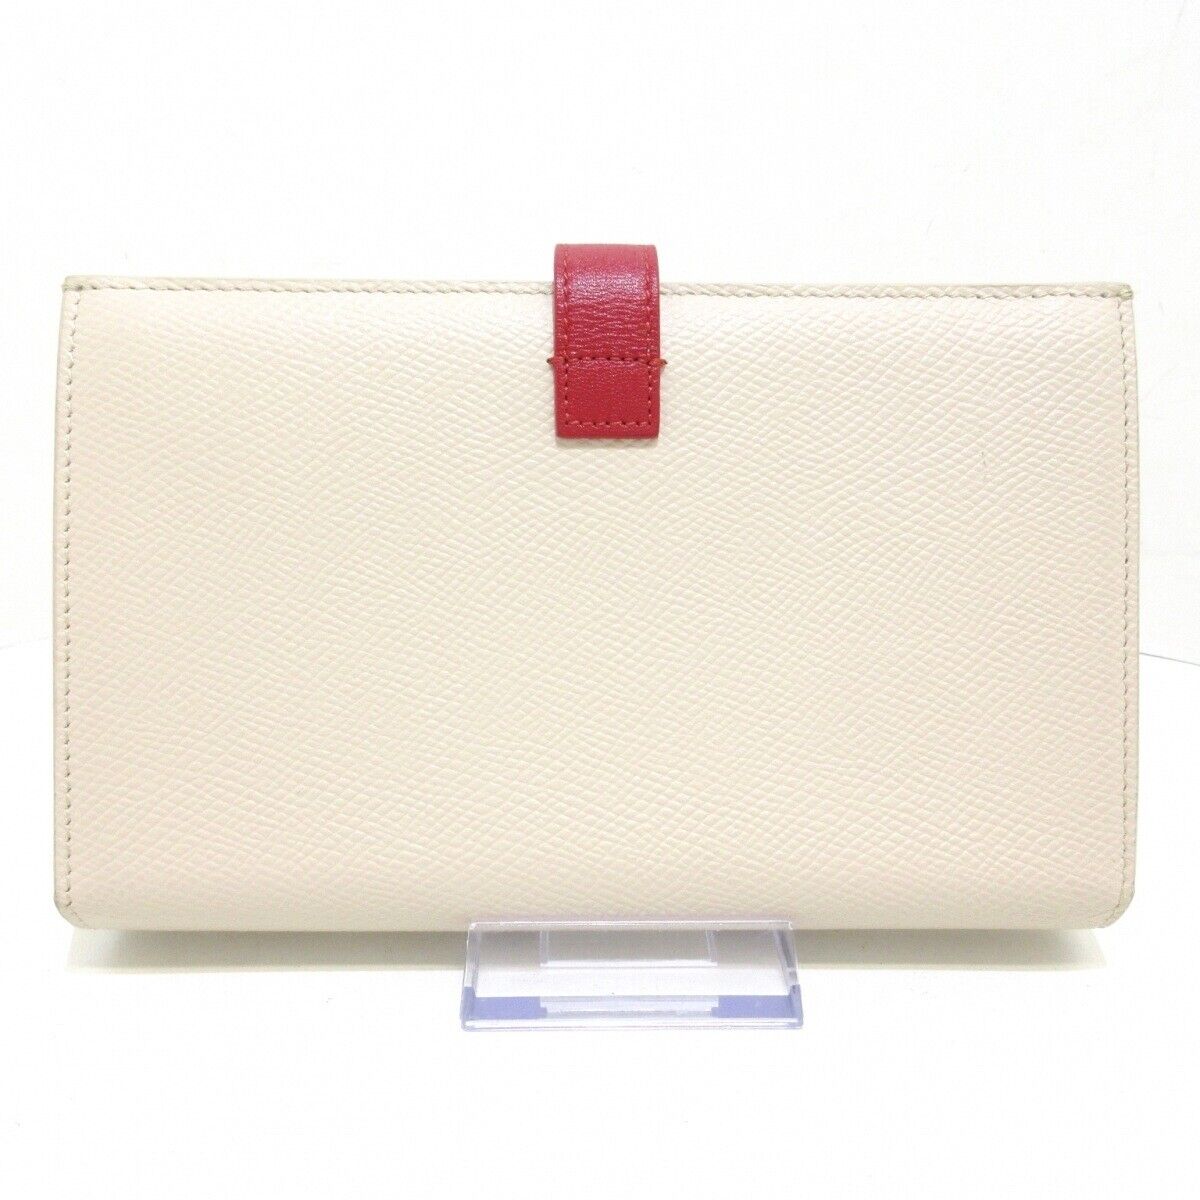 Celine Large Strap Wallet Long Beige Red Leather - image 1